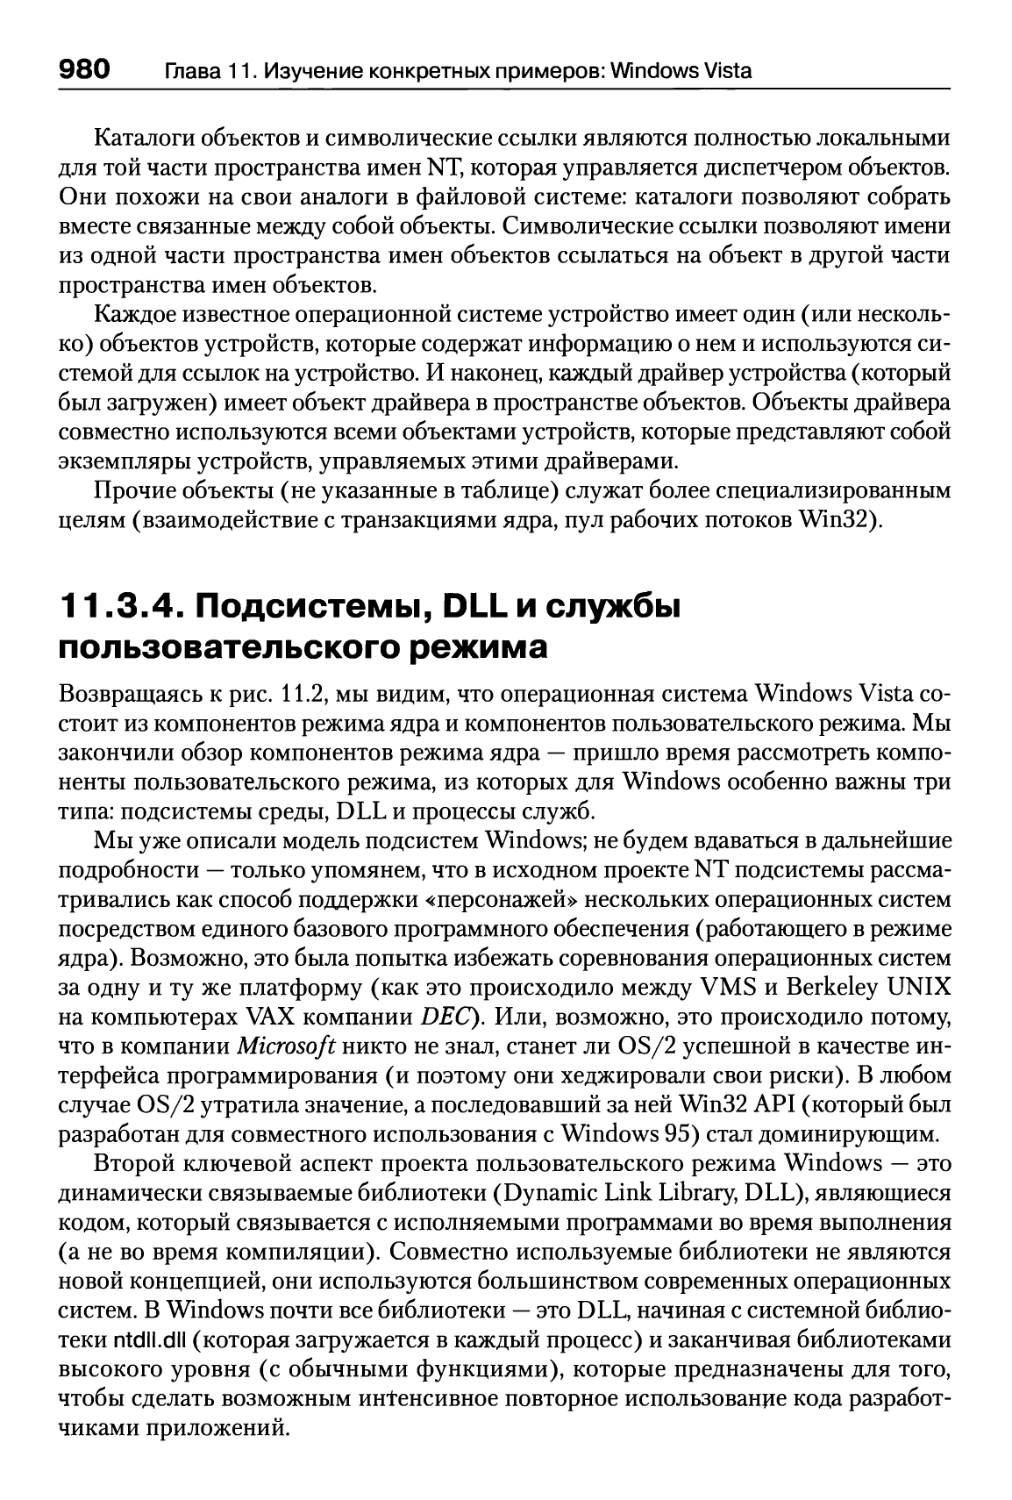 11.3.4. Подсистемы, DLL и службы пользовательского режима